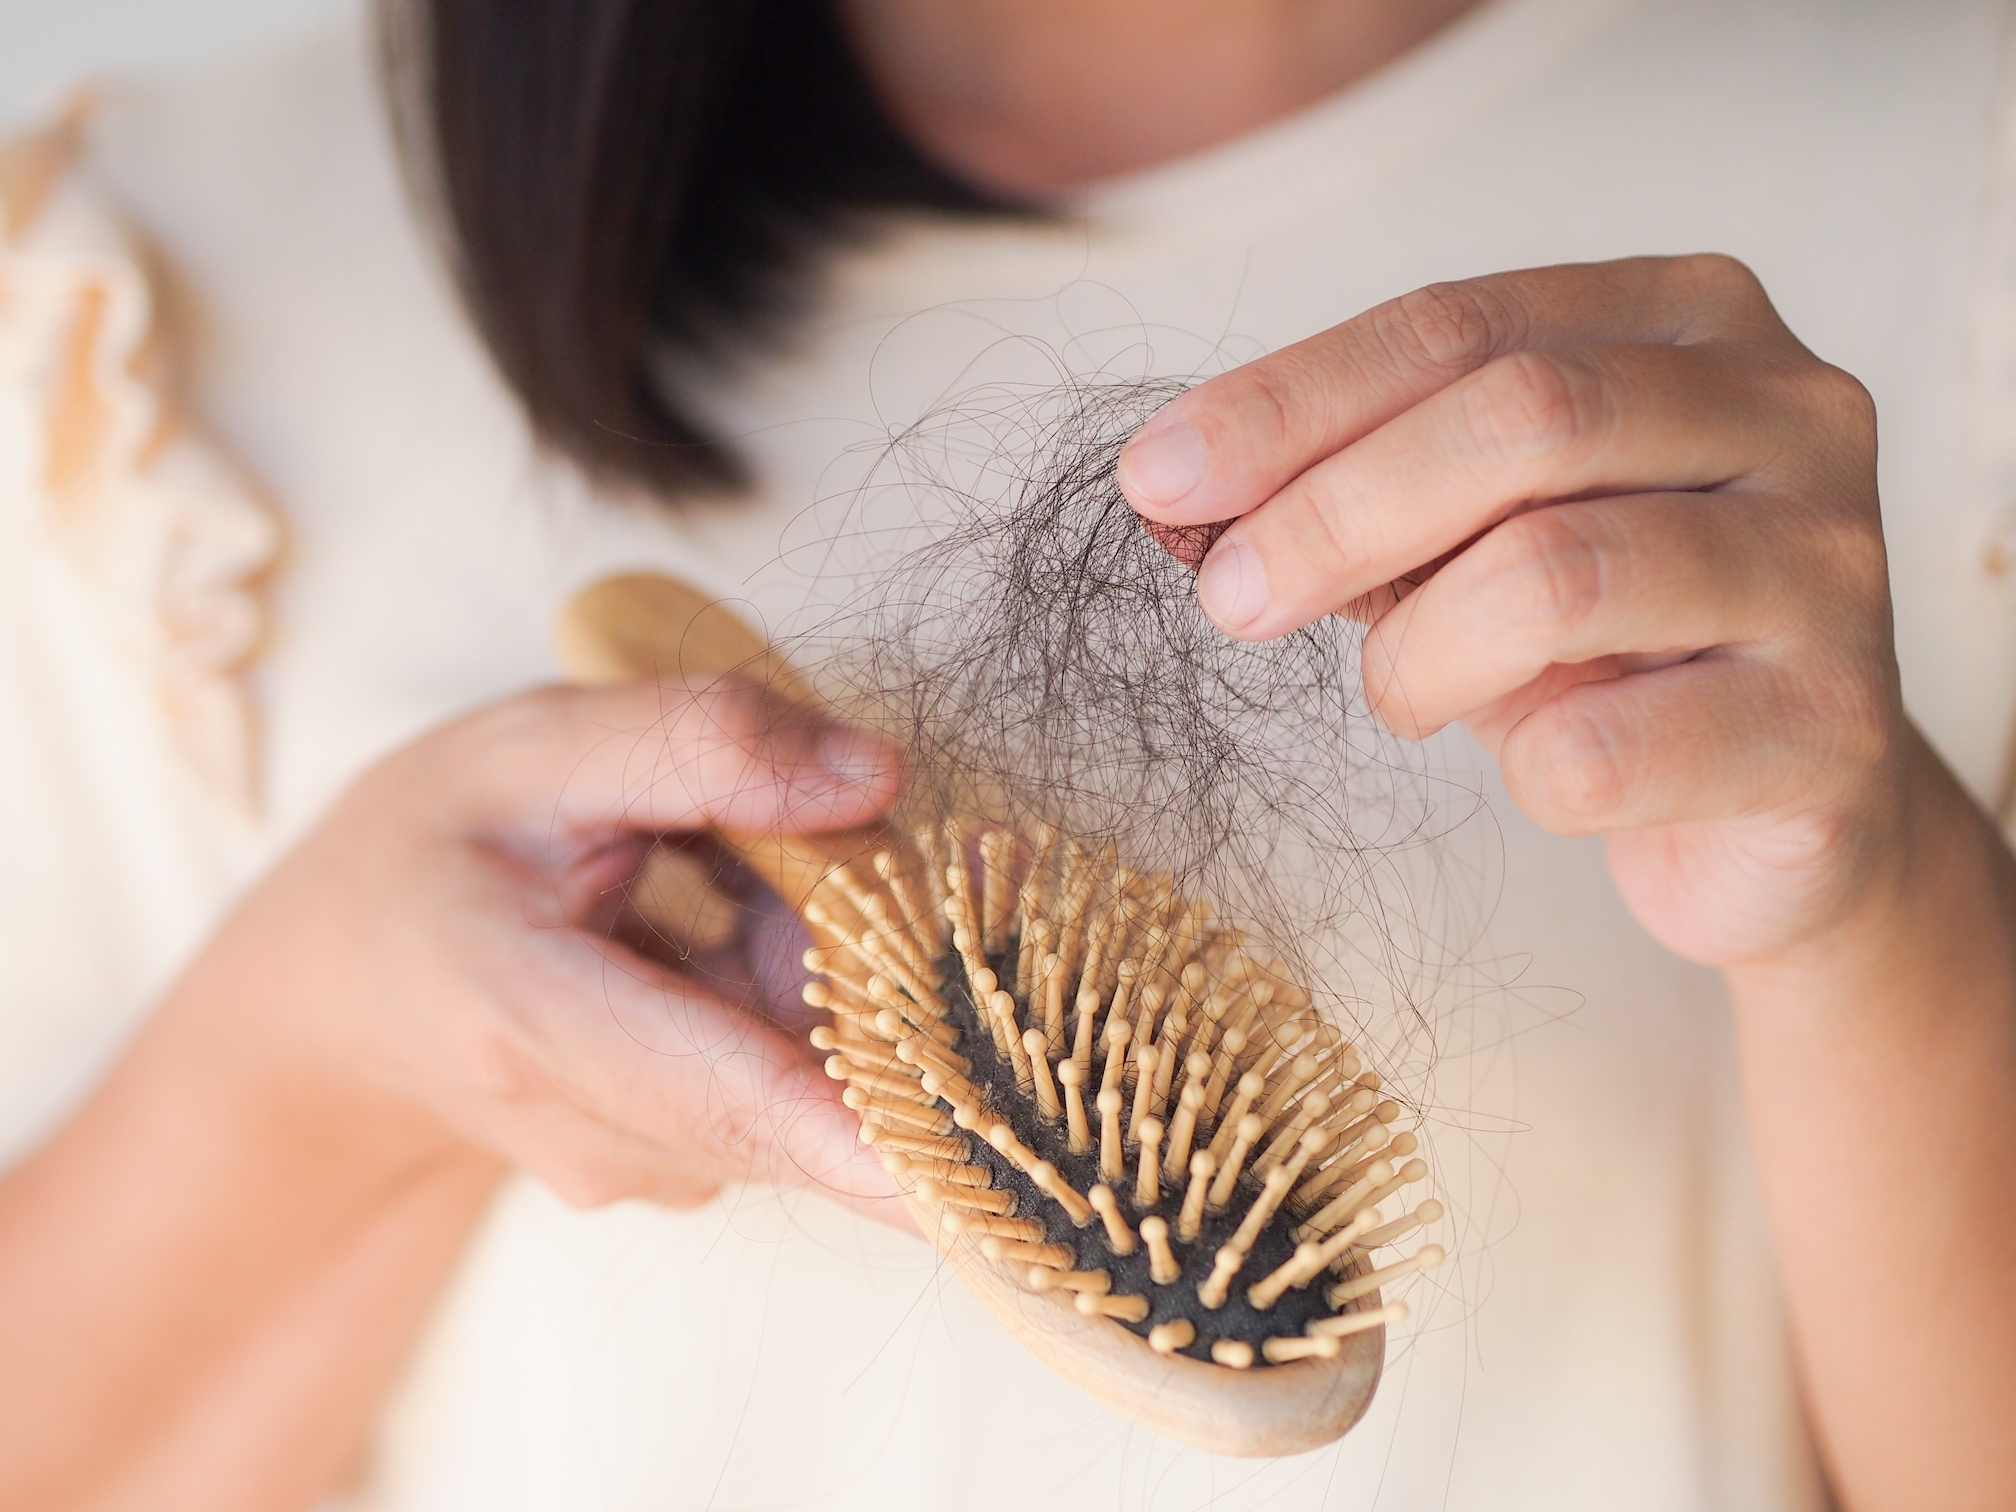 Il raffreddamento del cuoio capelluto per prevenire la caduta dei capelli, come funziona?